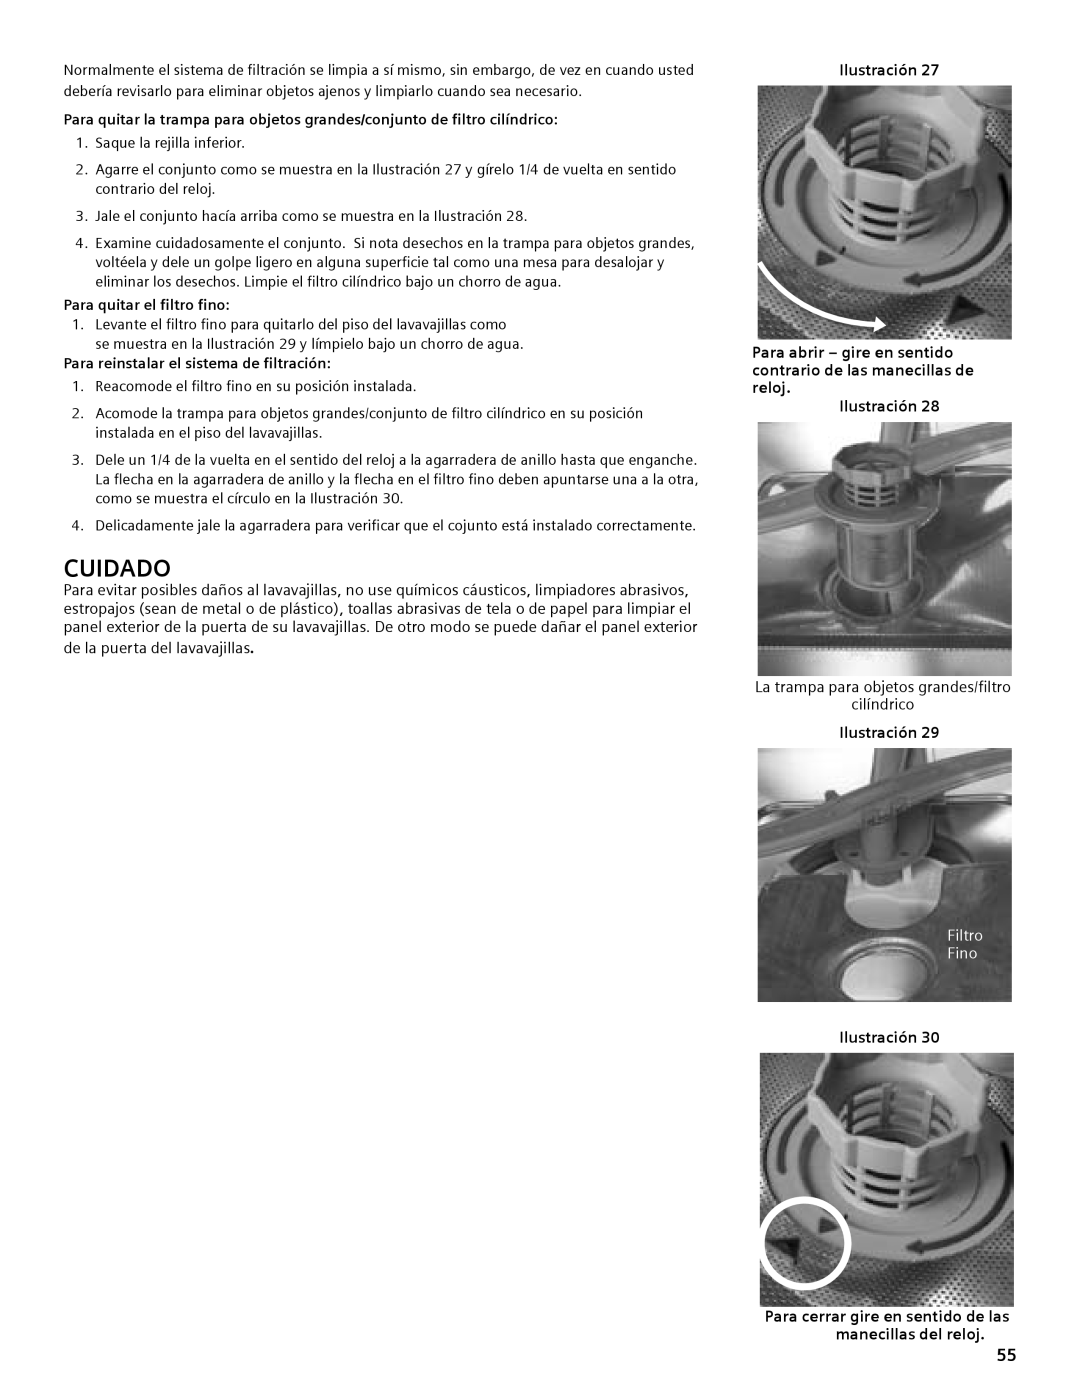 Compaq SHE55C manual Para abrir - gire en sentido contrario de las manecillas de reloj, Filtro Fino, Cuidado, Ilustración 